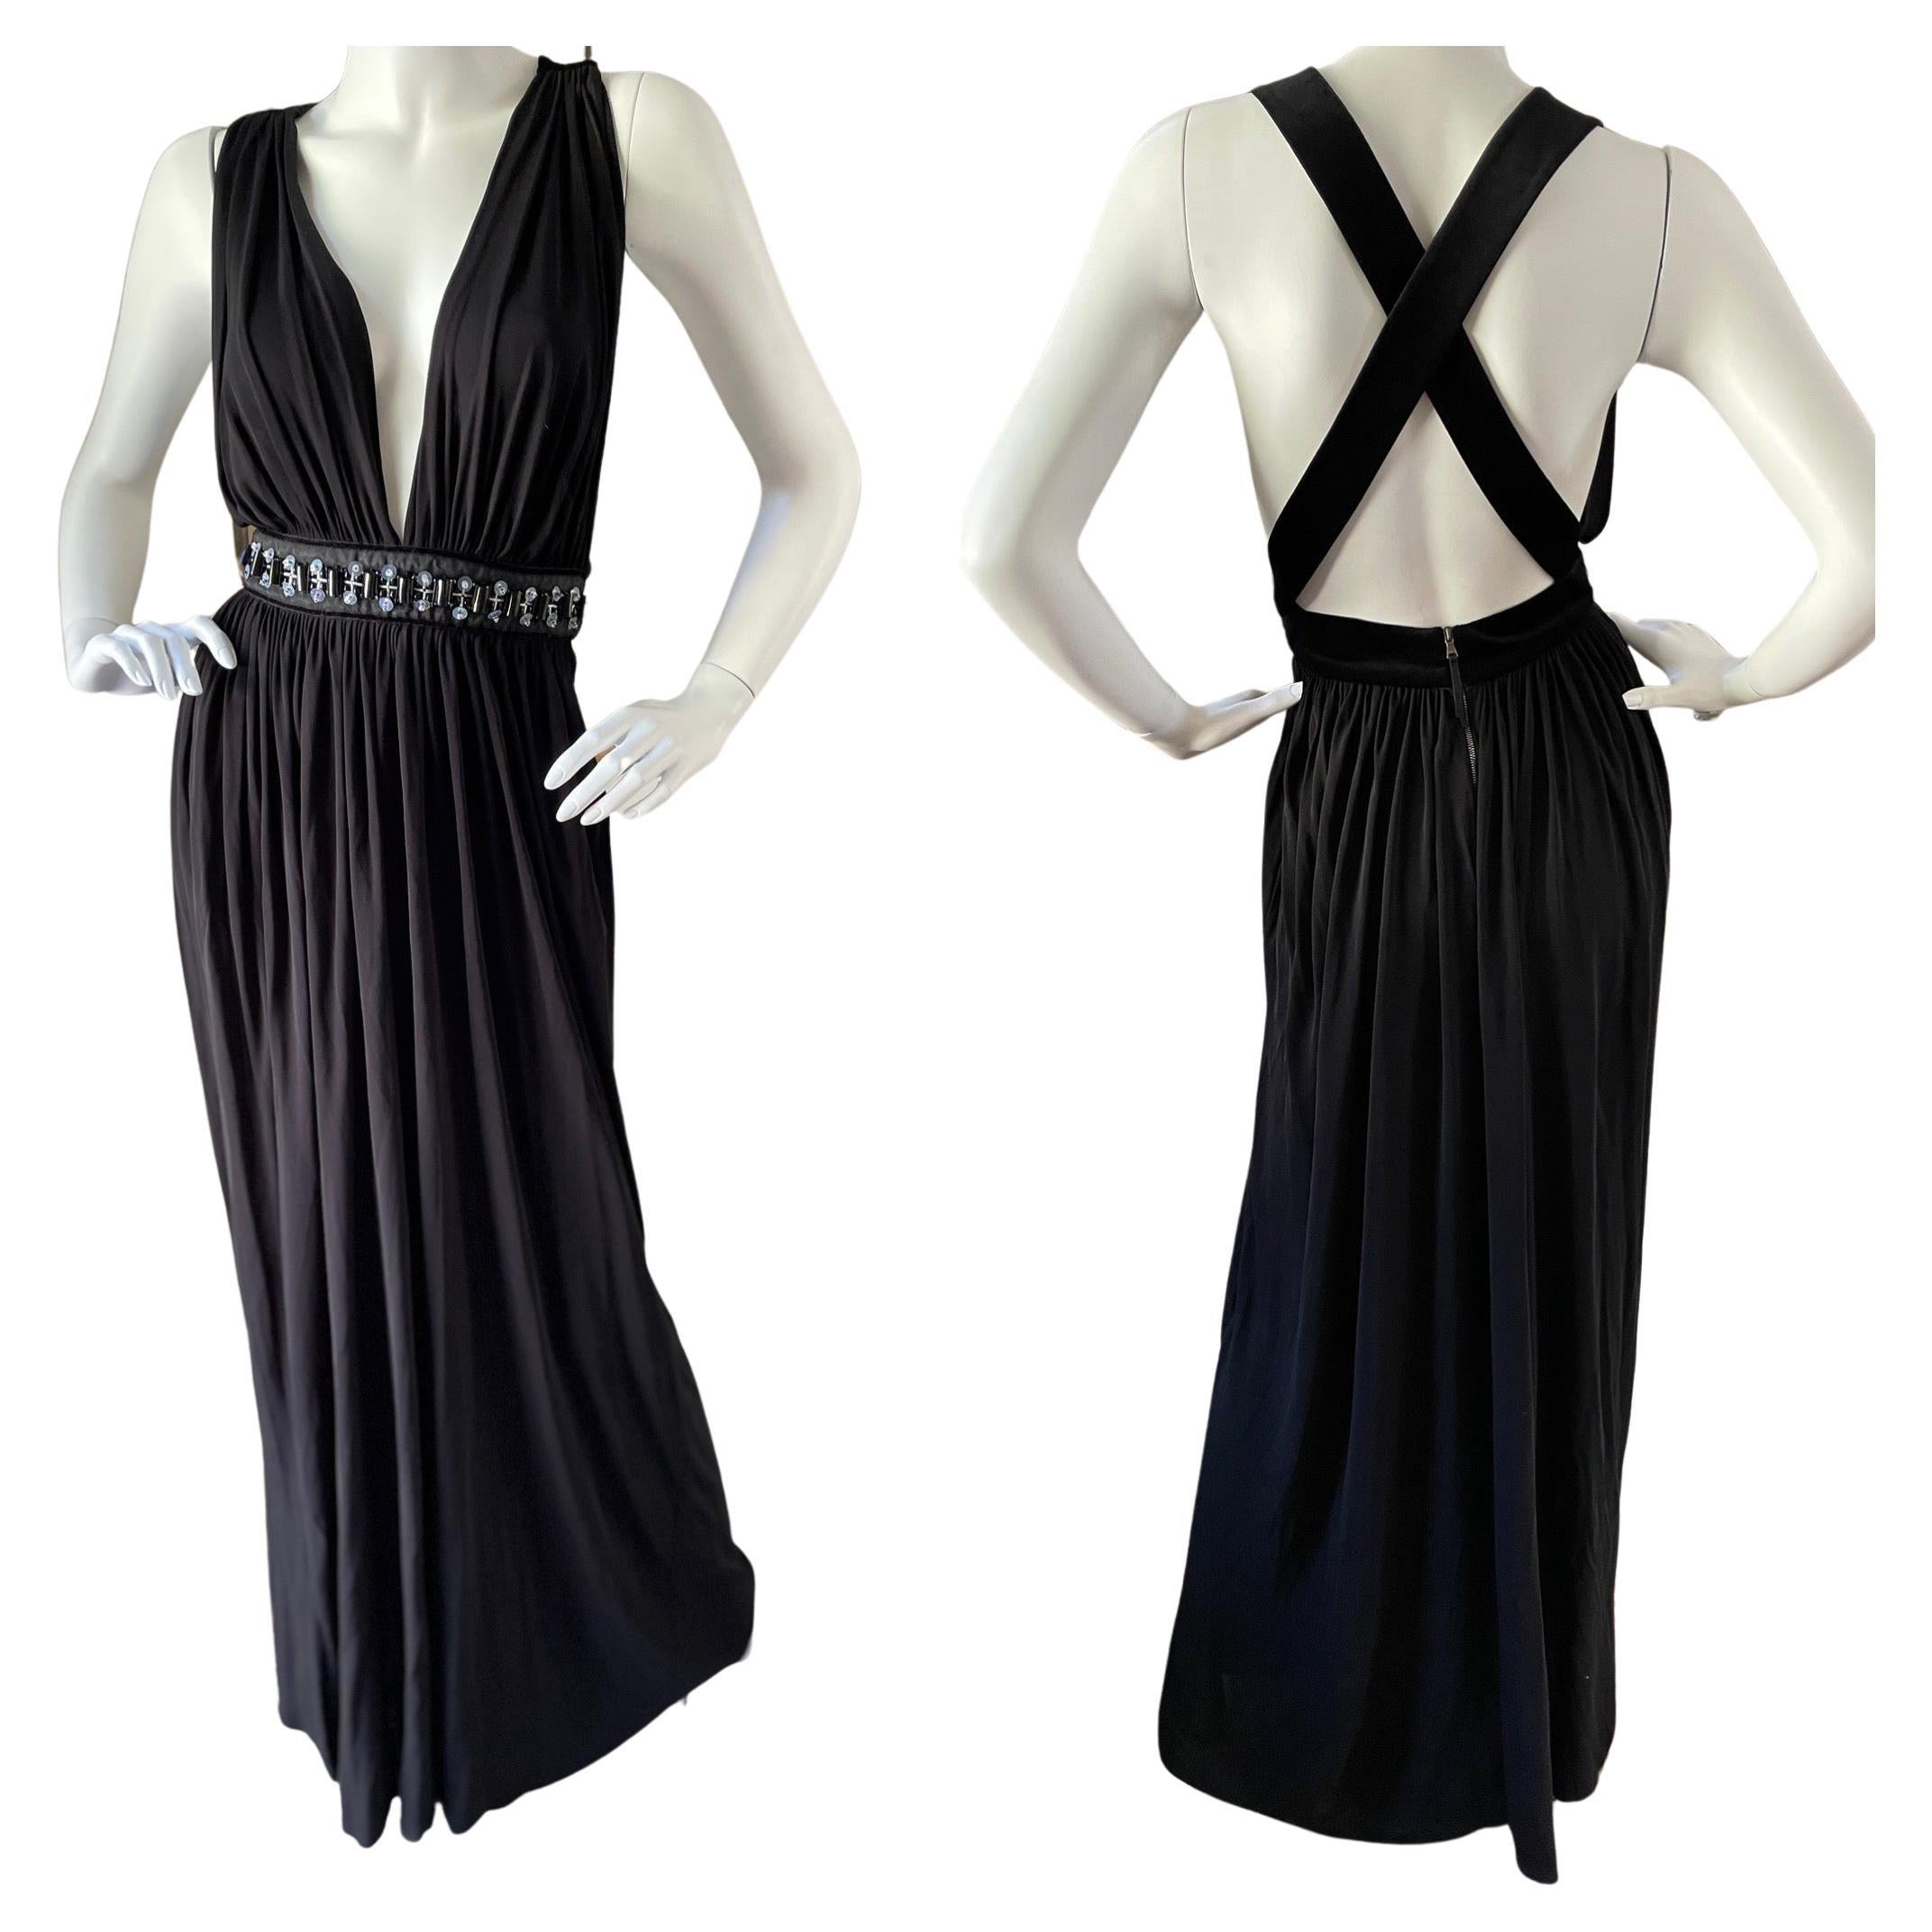 D&G by Dolce & Gabbana Vintage Plunging Black Evening Dress w Embellished Waist For Sale